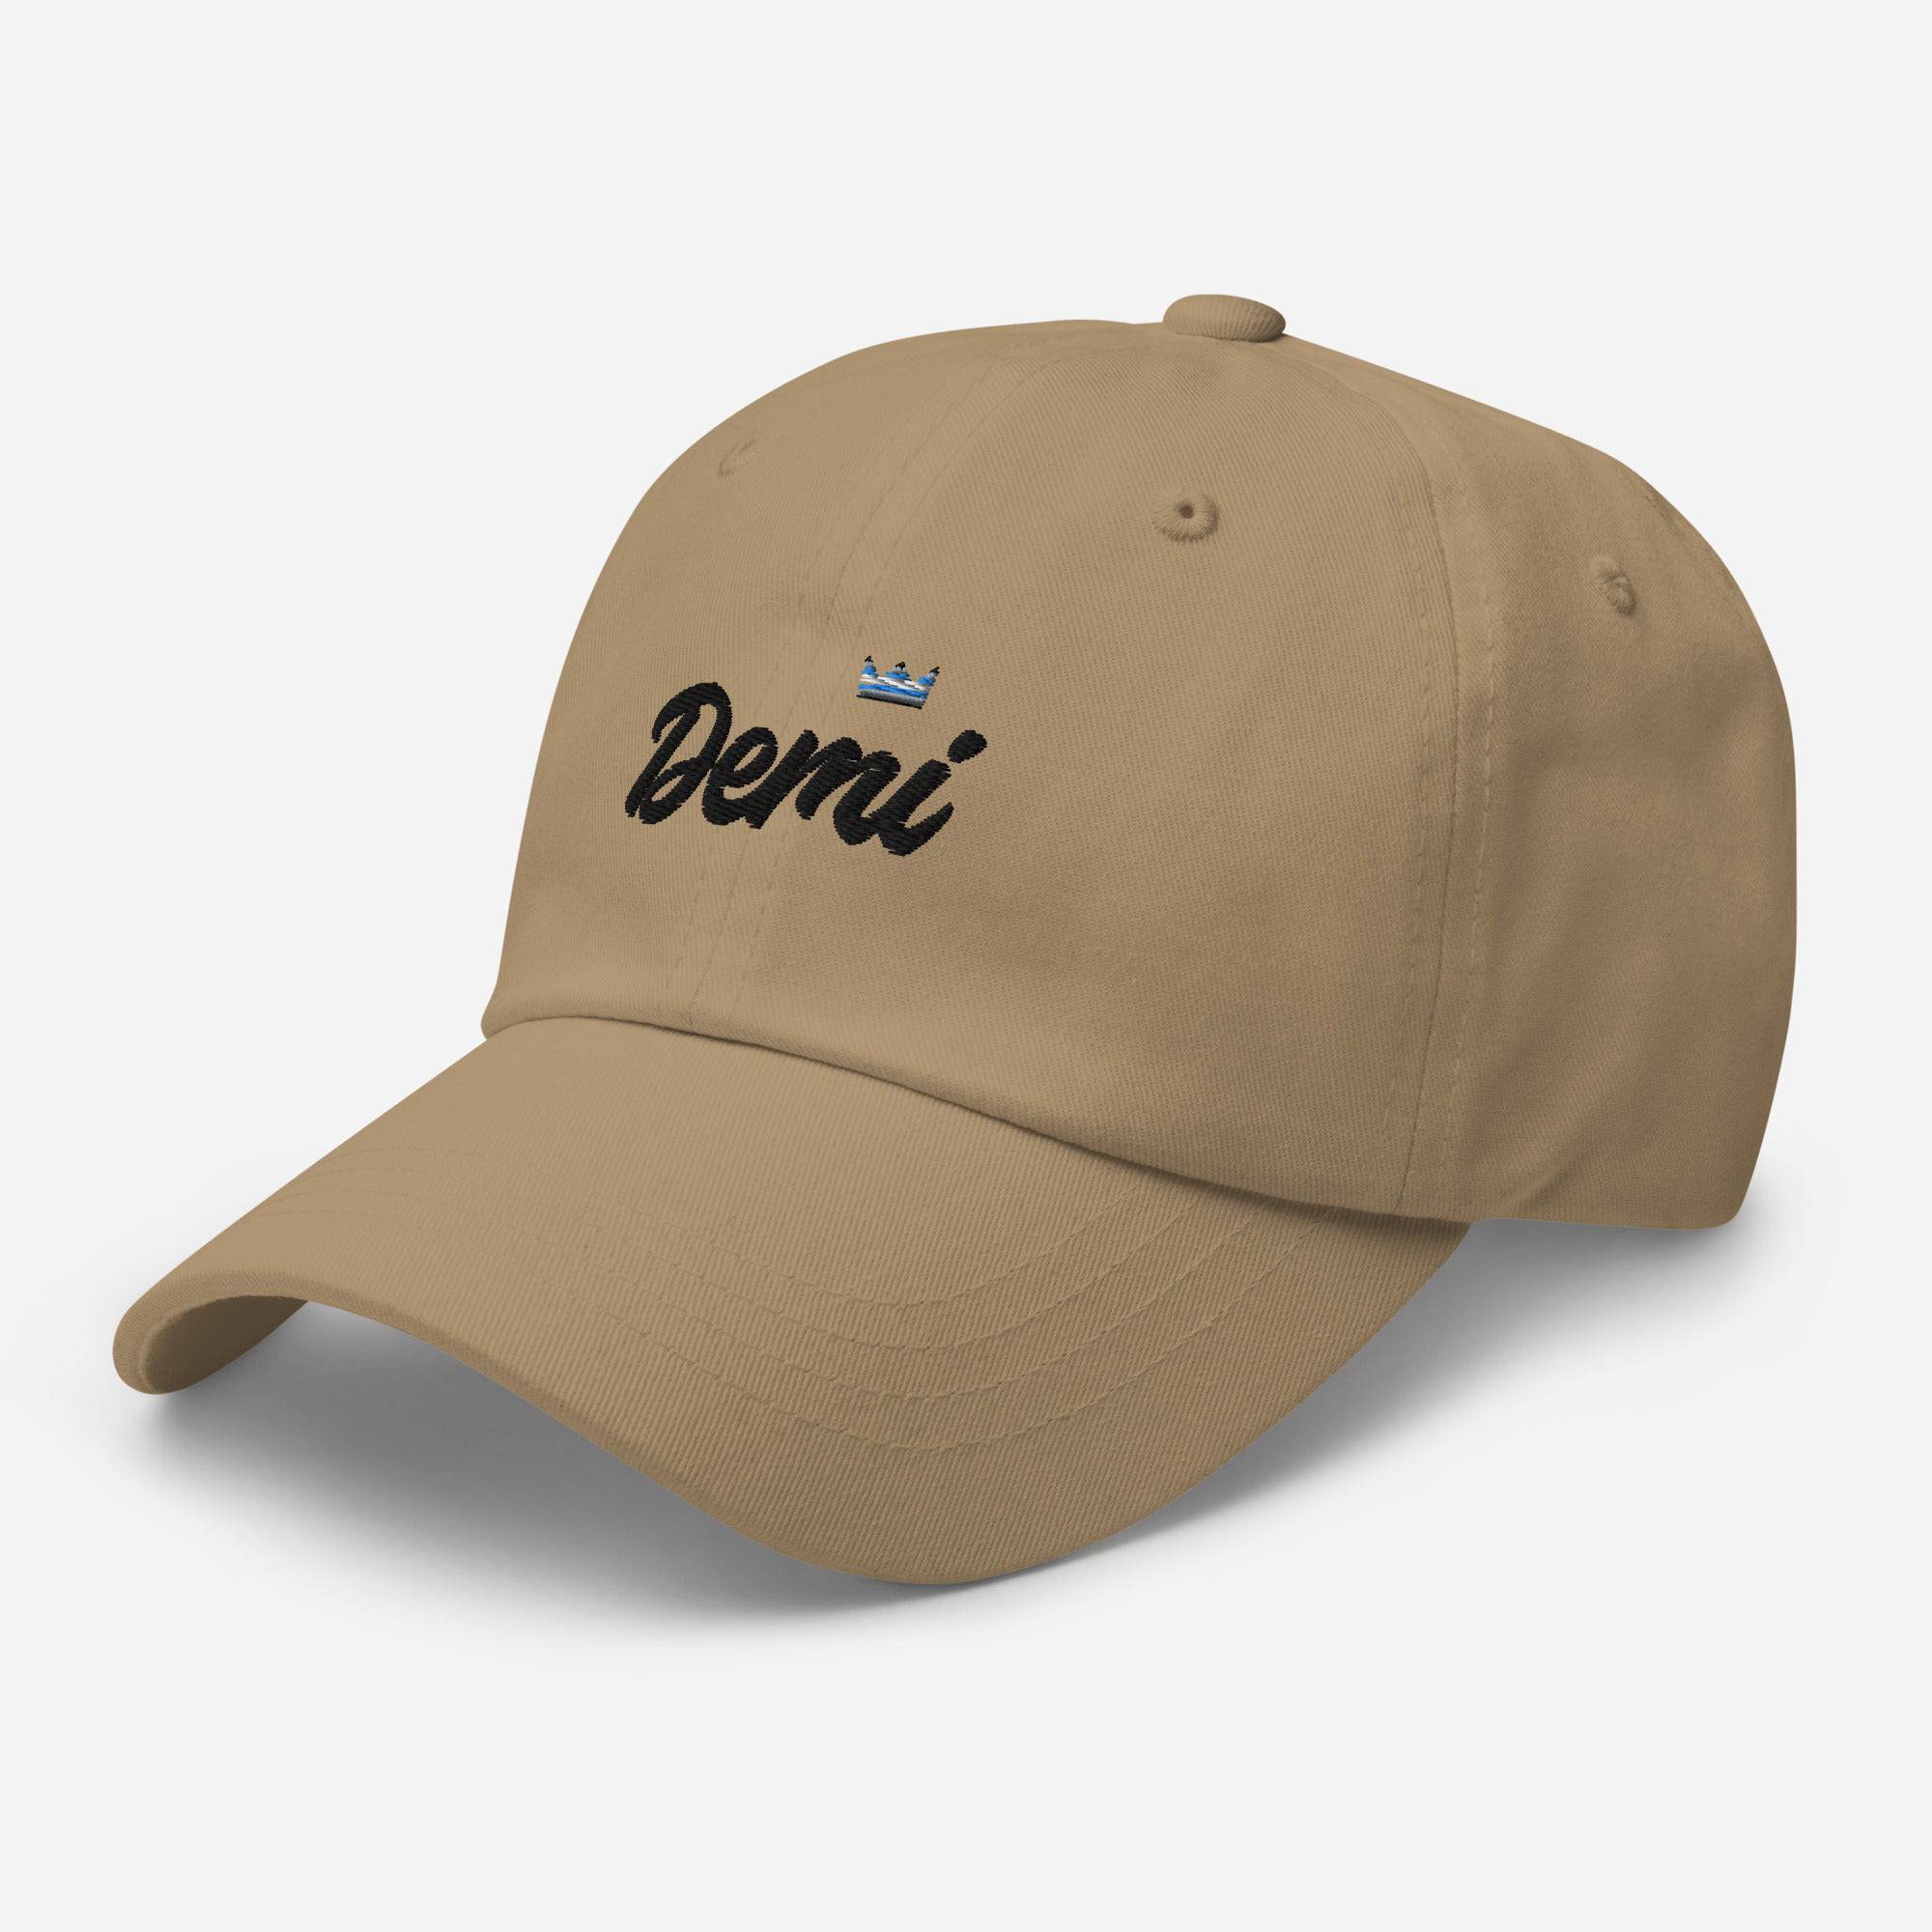 Demiboy Pride Royalty Crown Dad hat - Rose Gold Co. Shop